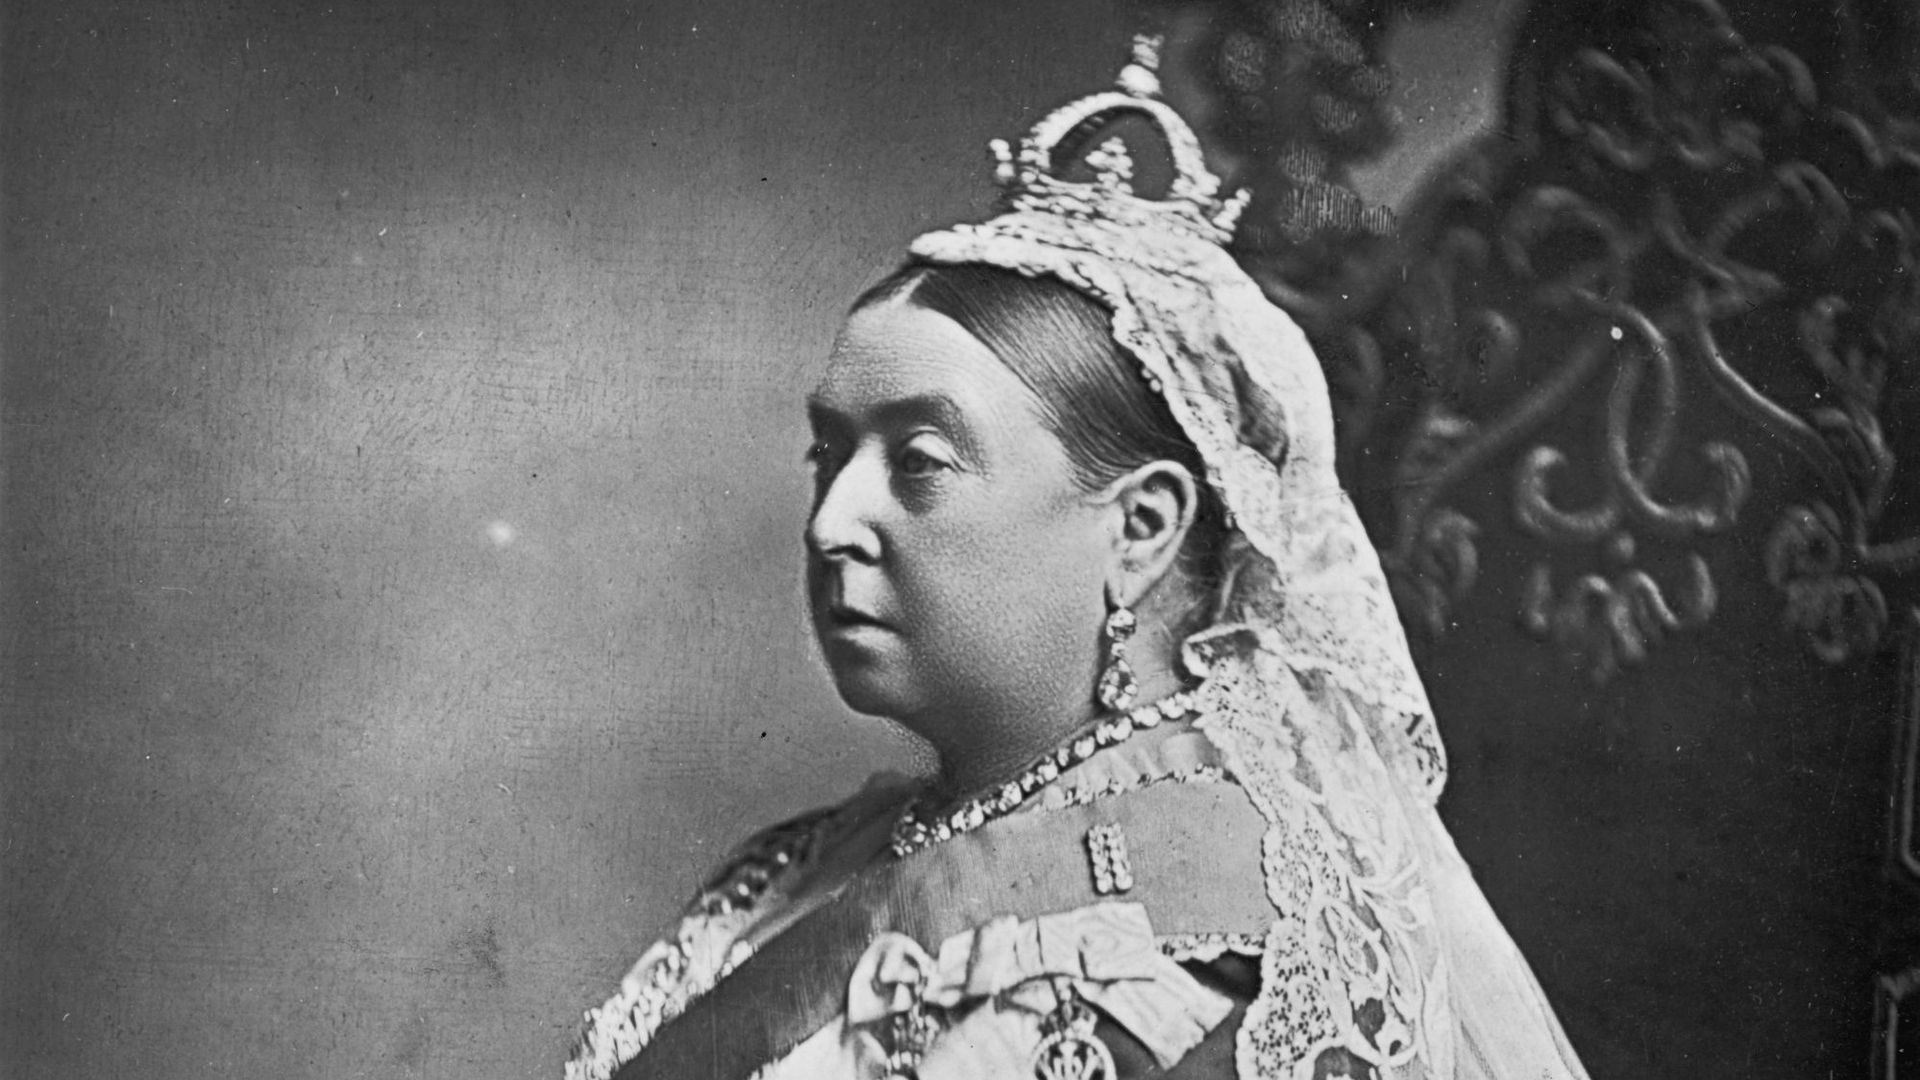 La reine Victoria a régné de 1837 à 1901 sur l'Angleterre